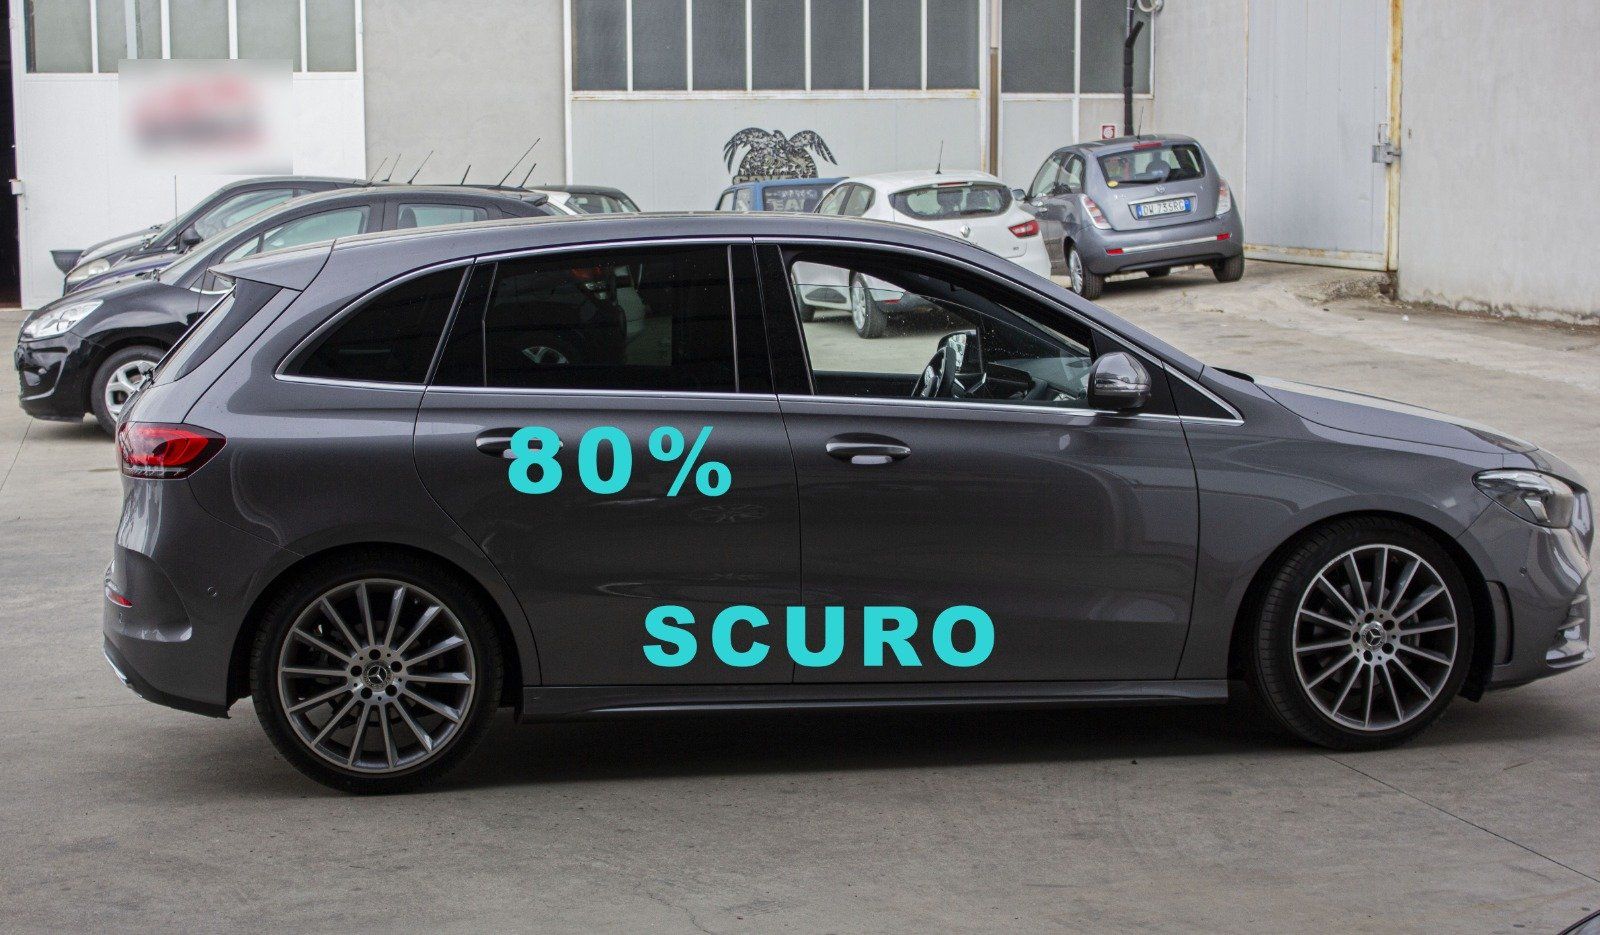 Gradazione  tonalità oscuramento vetri auto con pellicole oscuranti al 80% scuro Mercedes Classe B del 2020